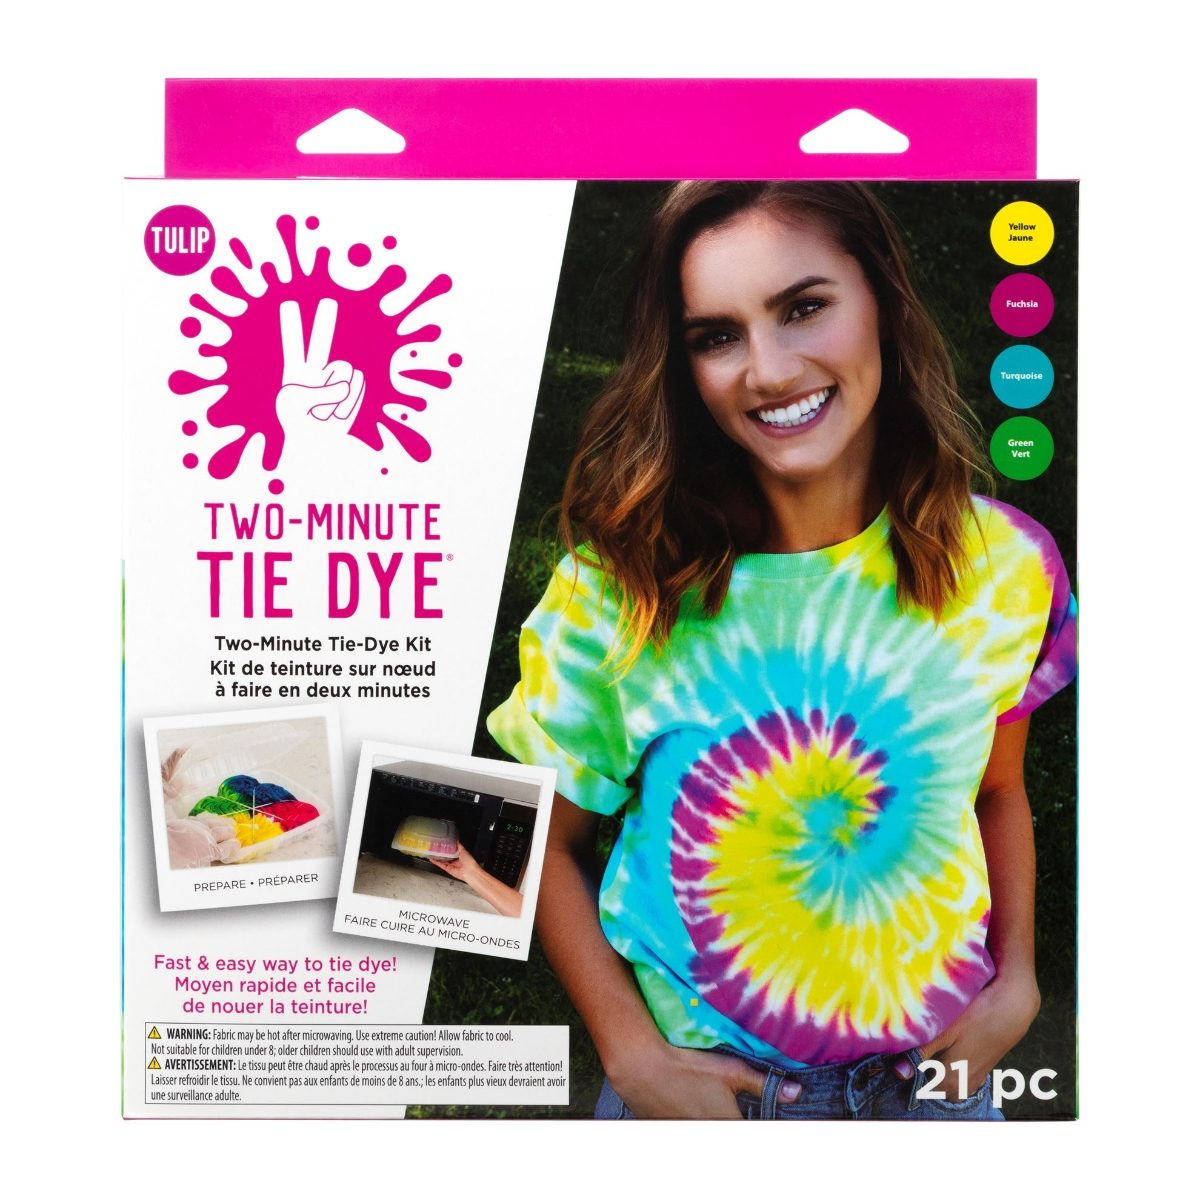 43189 Tulip Two-Minute Tie Dye Kit